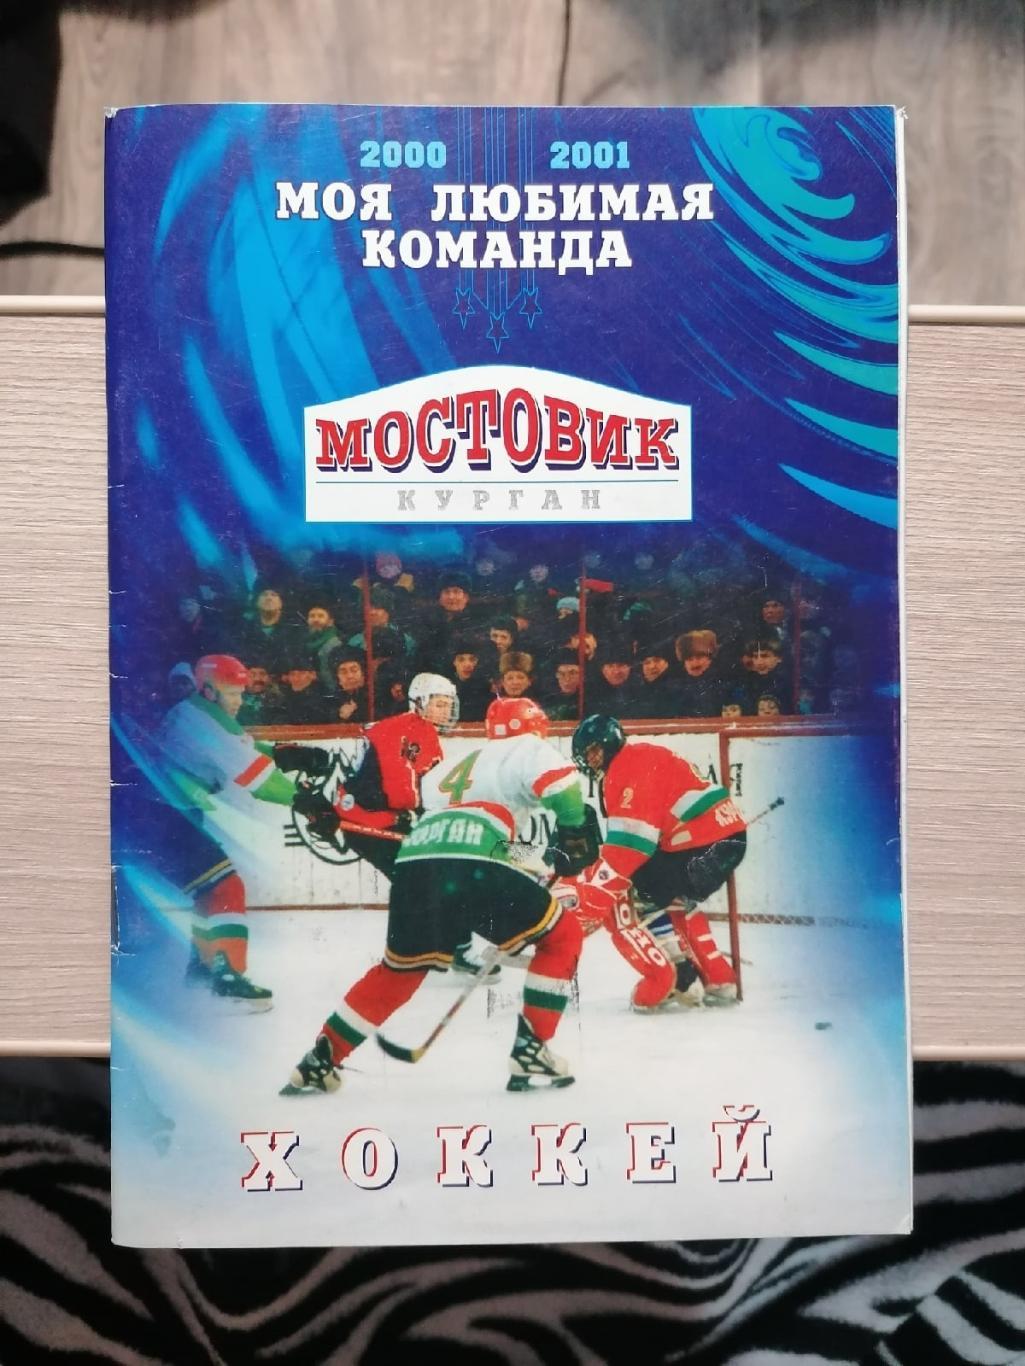 Моя любимая команда 2000-2001. ХК Мостовик (Курган). Календарь любителя хоккея